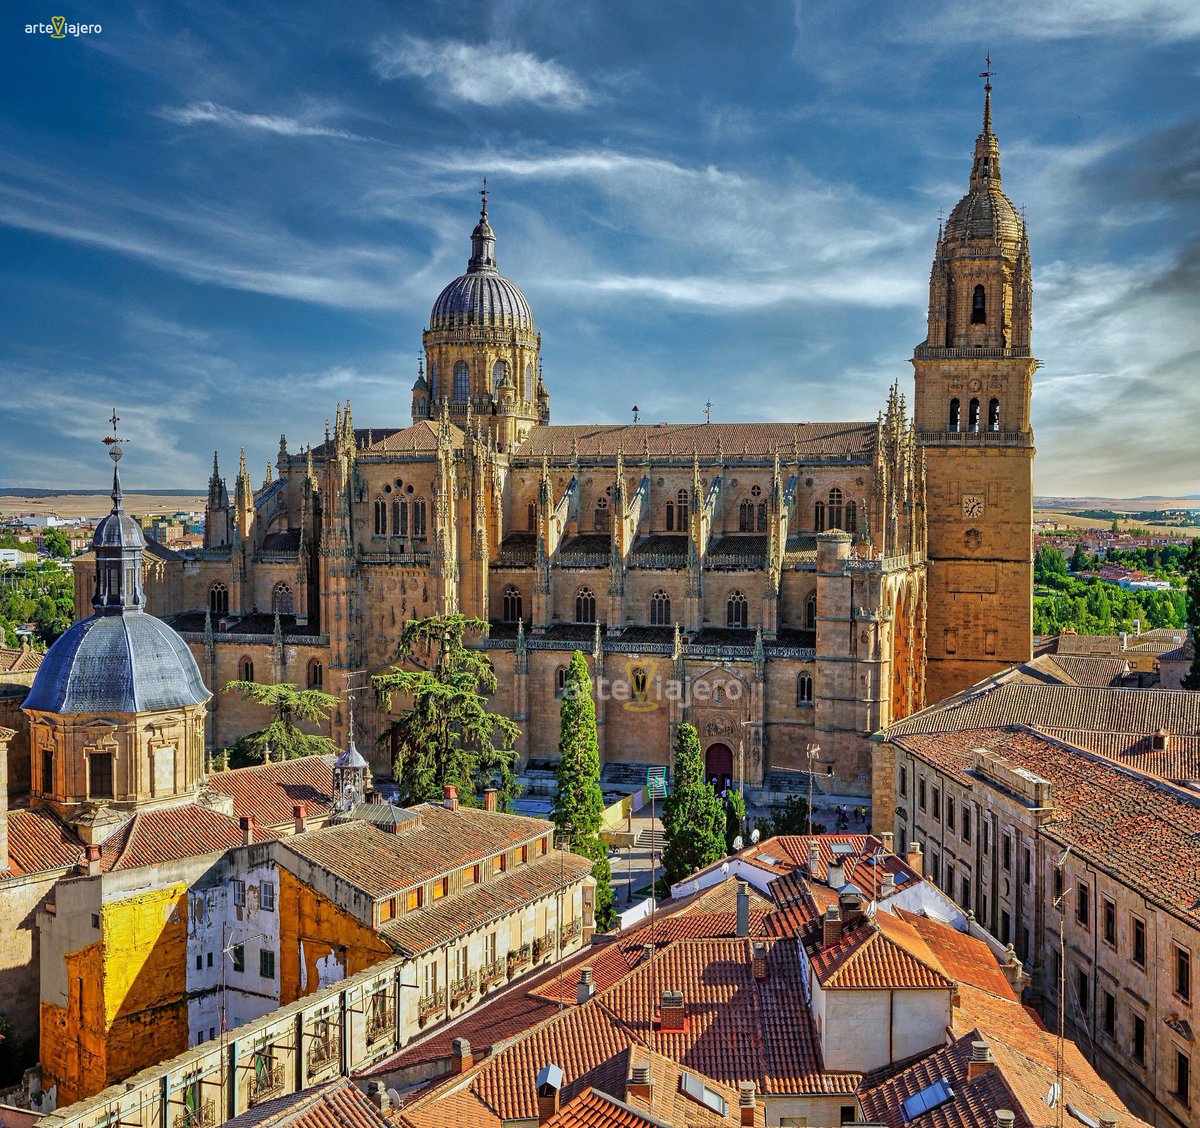 Catedral Nueva de Salamanca, levantada entre los años 1513 y 1733. En ella se combinan perfectamente los estilos gótico, renacentista y barroco. Es una de las catedrales más grandes de España, su campanario alcanza los 92 metros de altura #FelizLunes #photography #travel